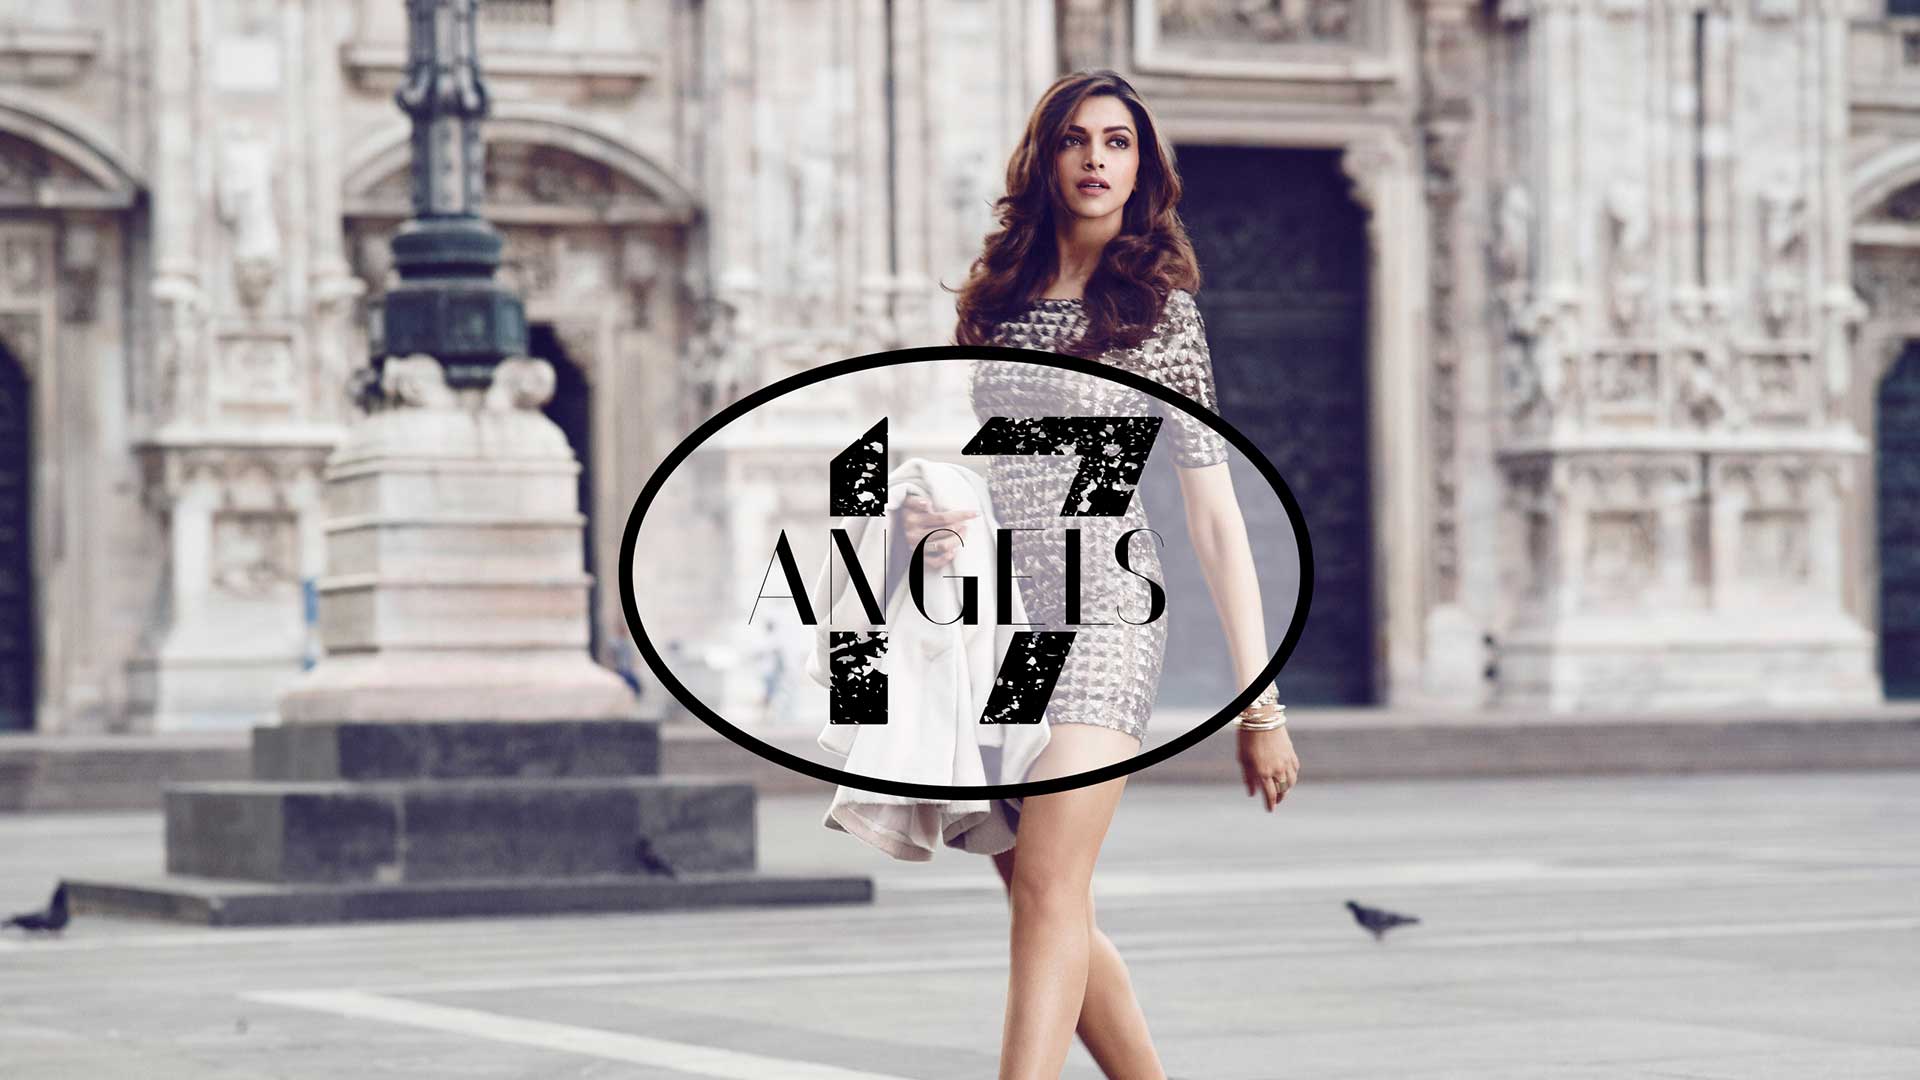 Разработка логотипа для магазина женской одежды Angels 17